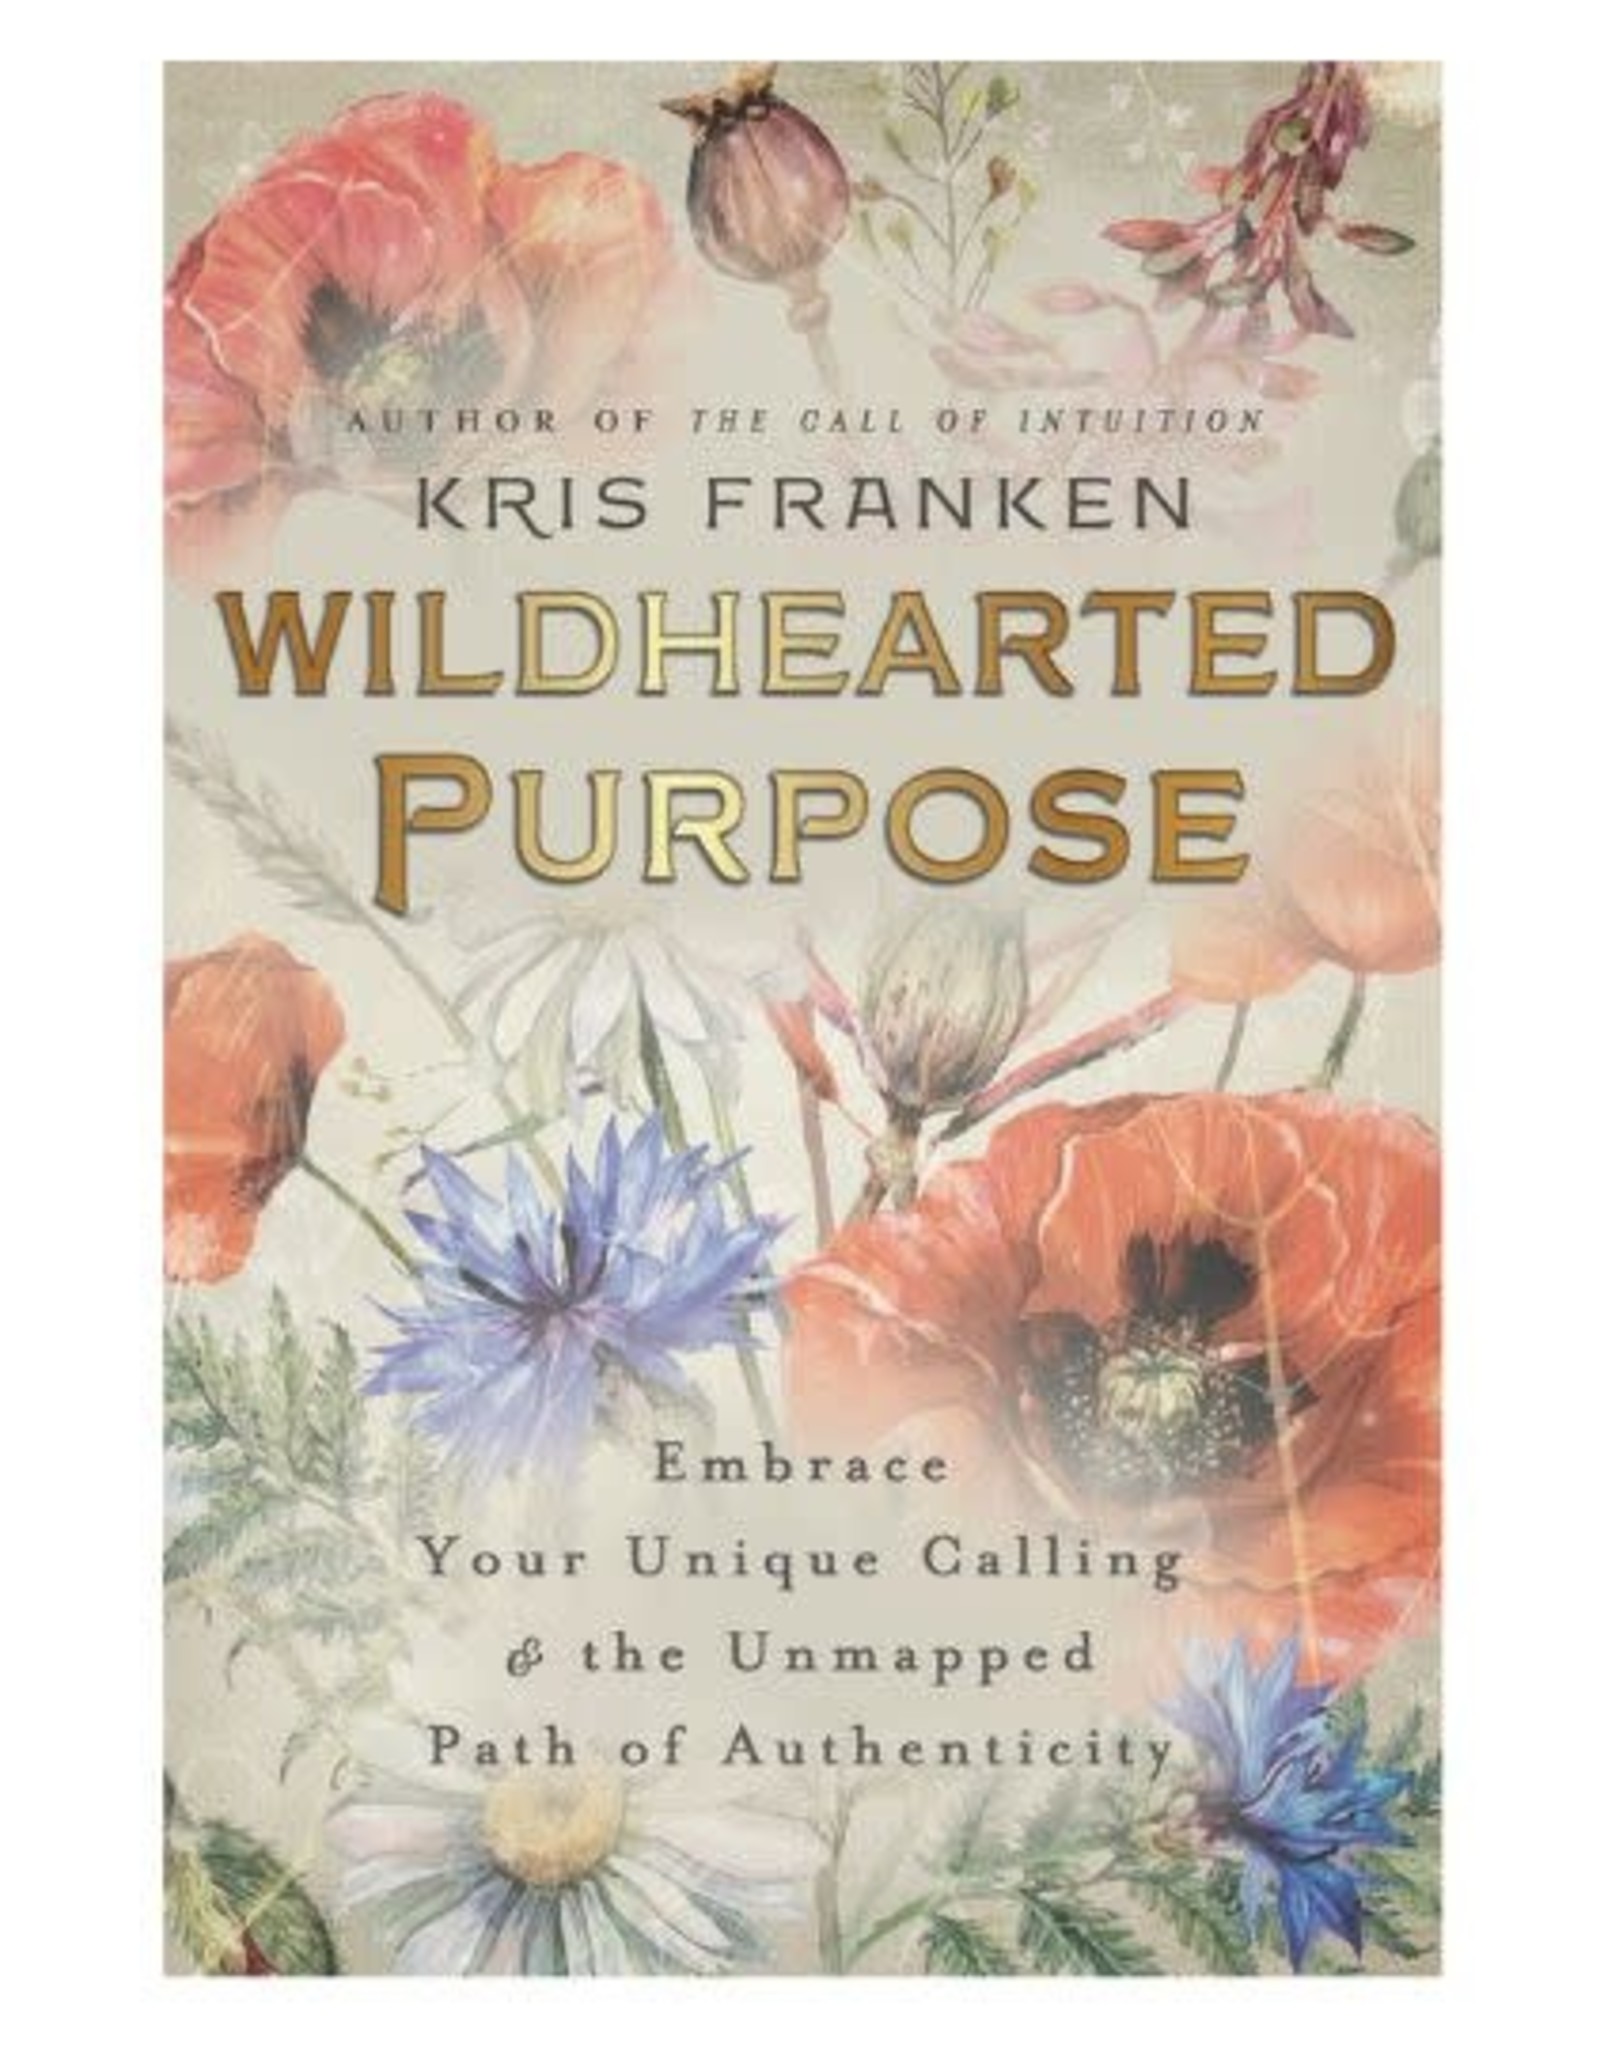 Wildhearted Purpose by Kris Franken